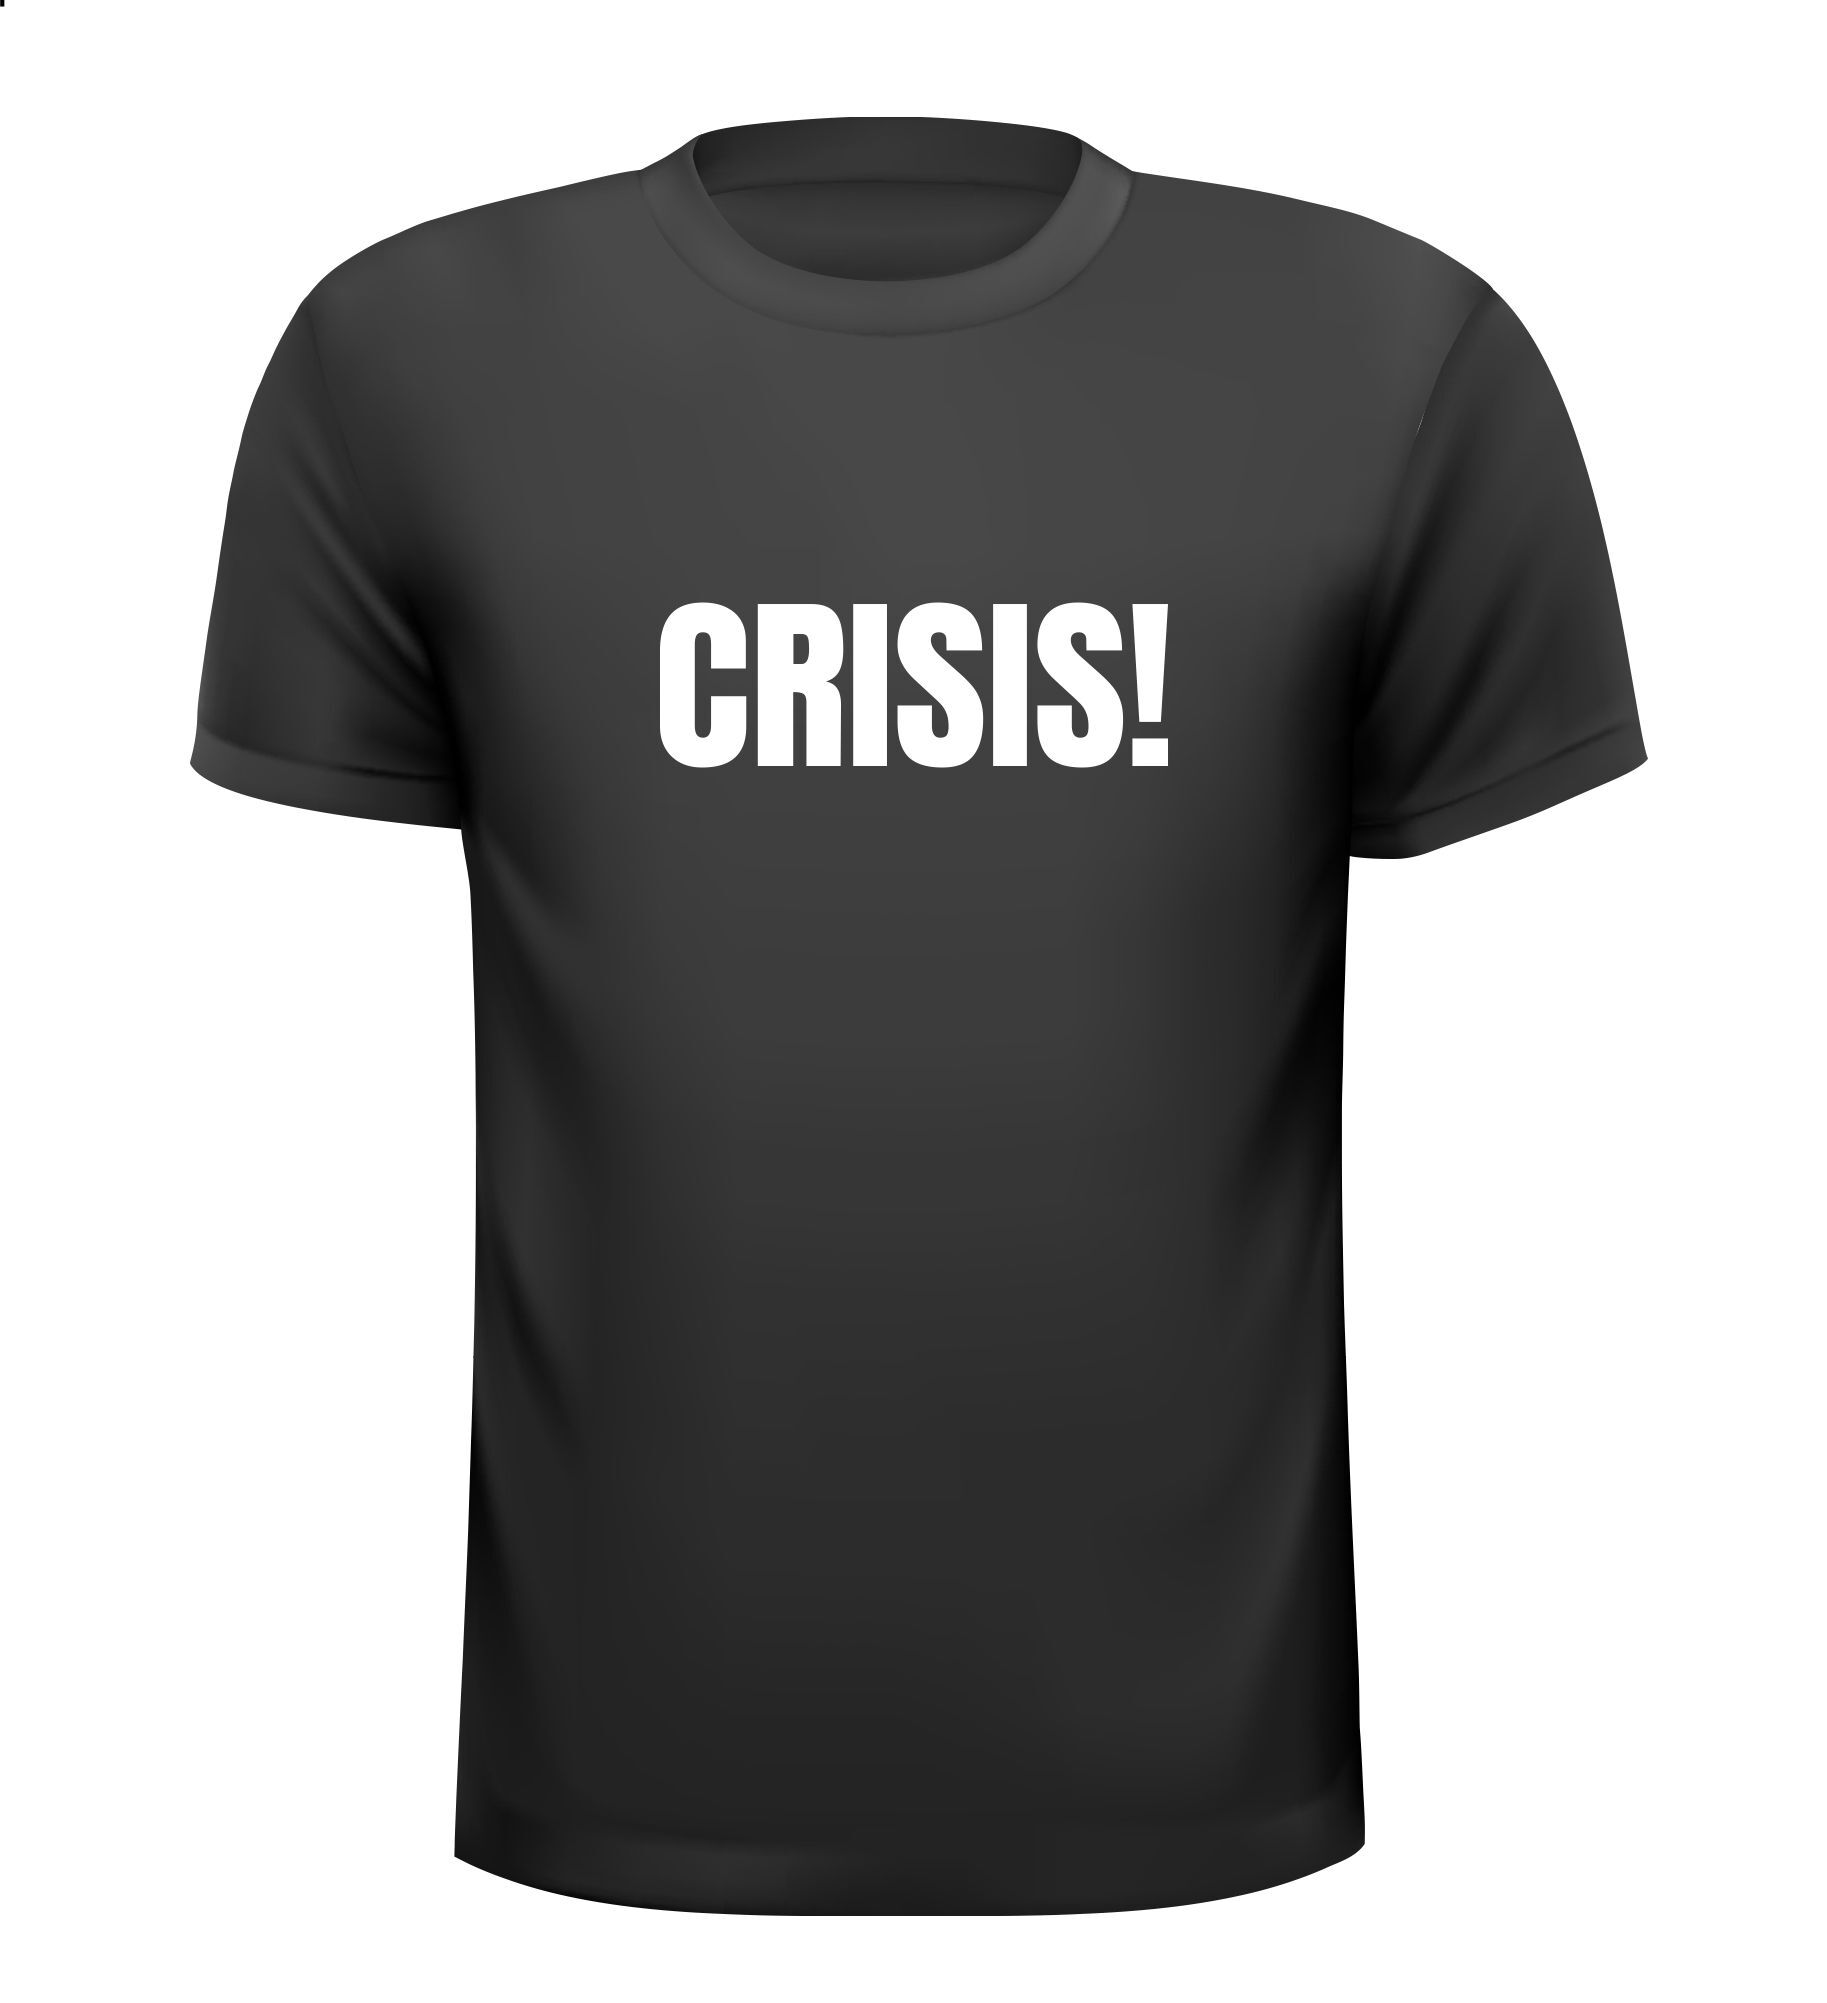 T-shirt crisis! energie crisis, woning crisis, stikstof crisis